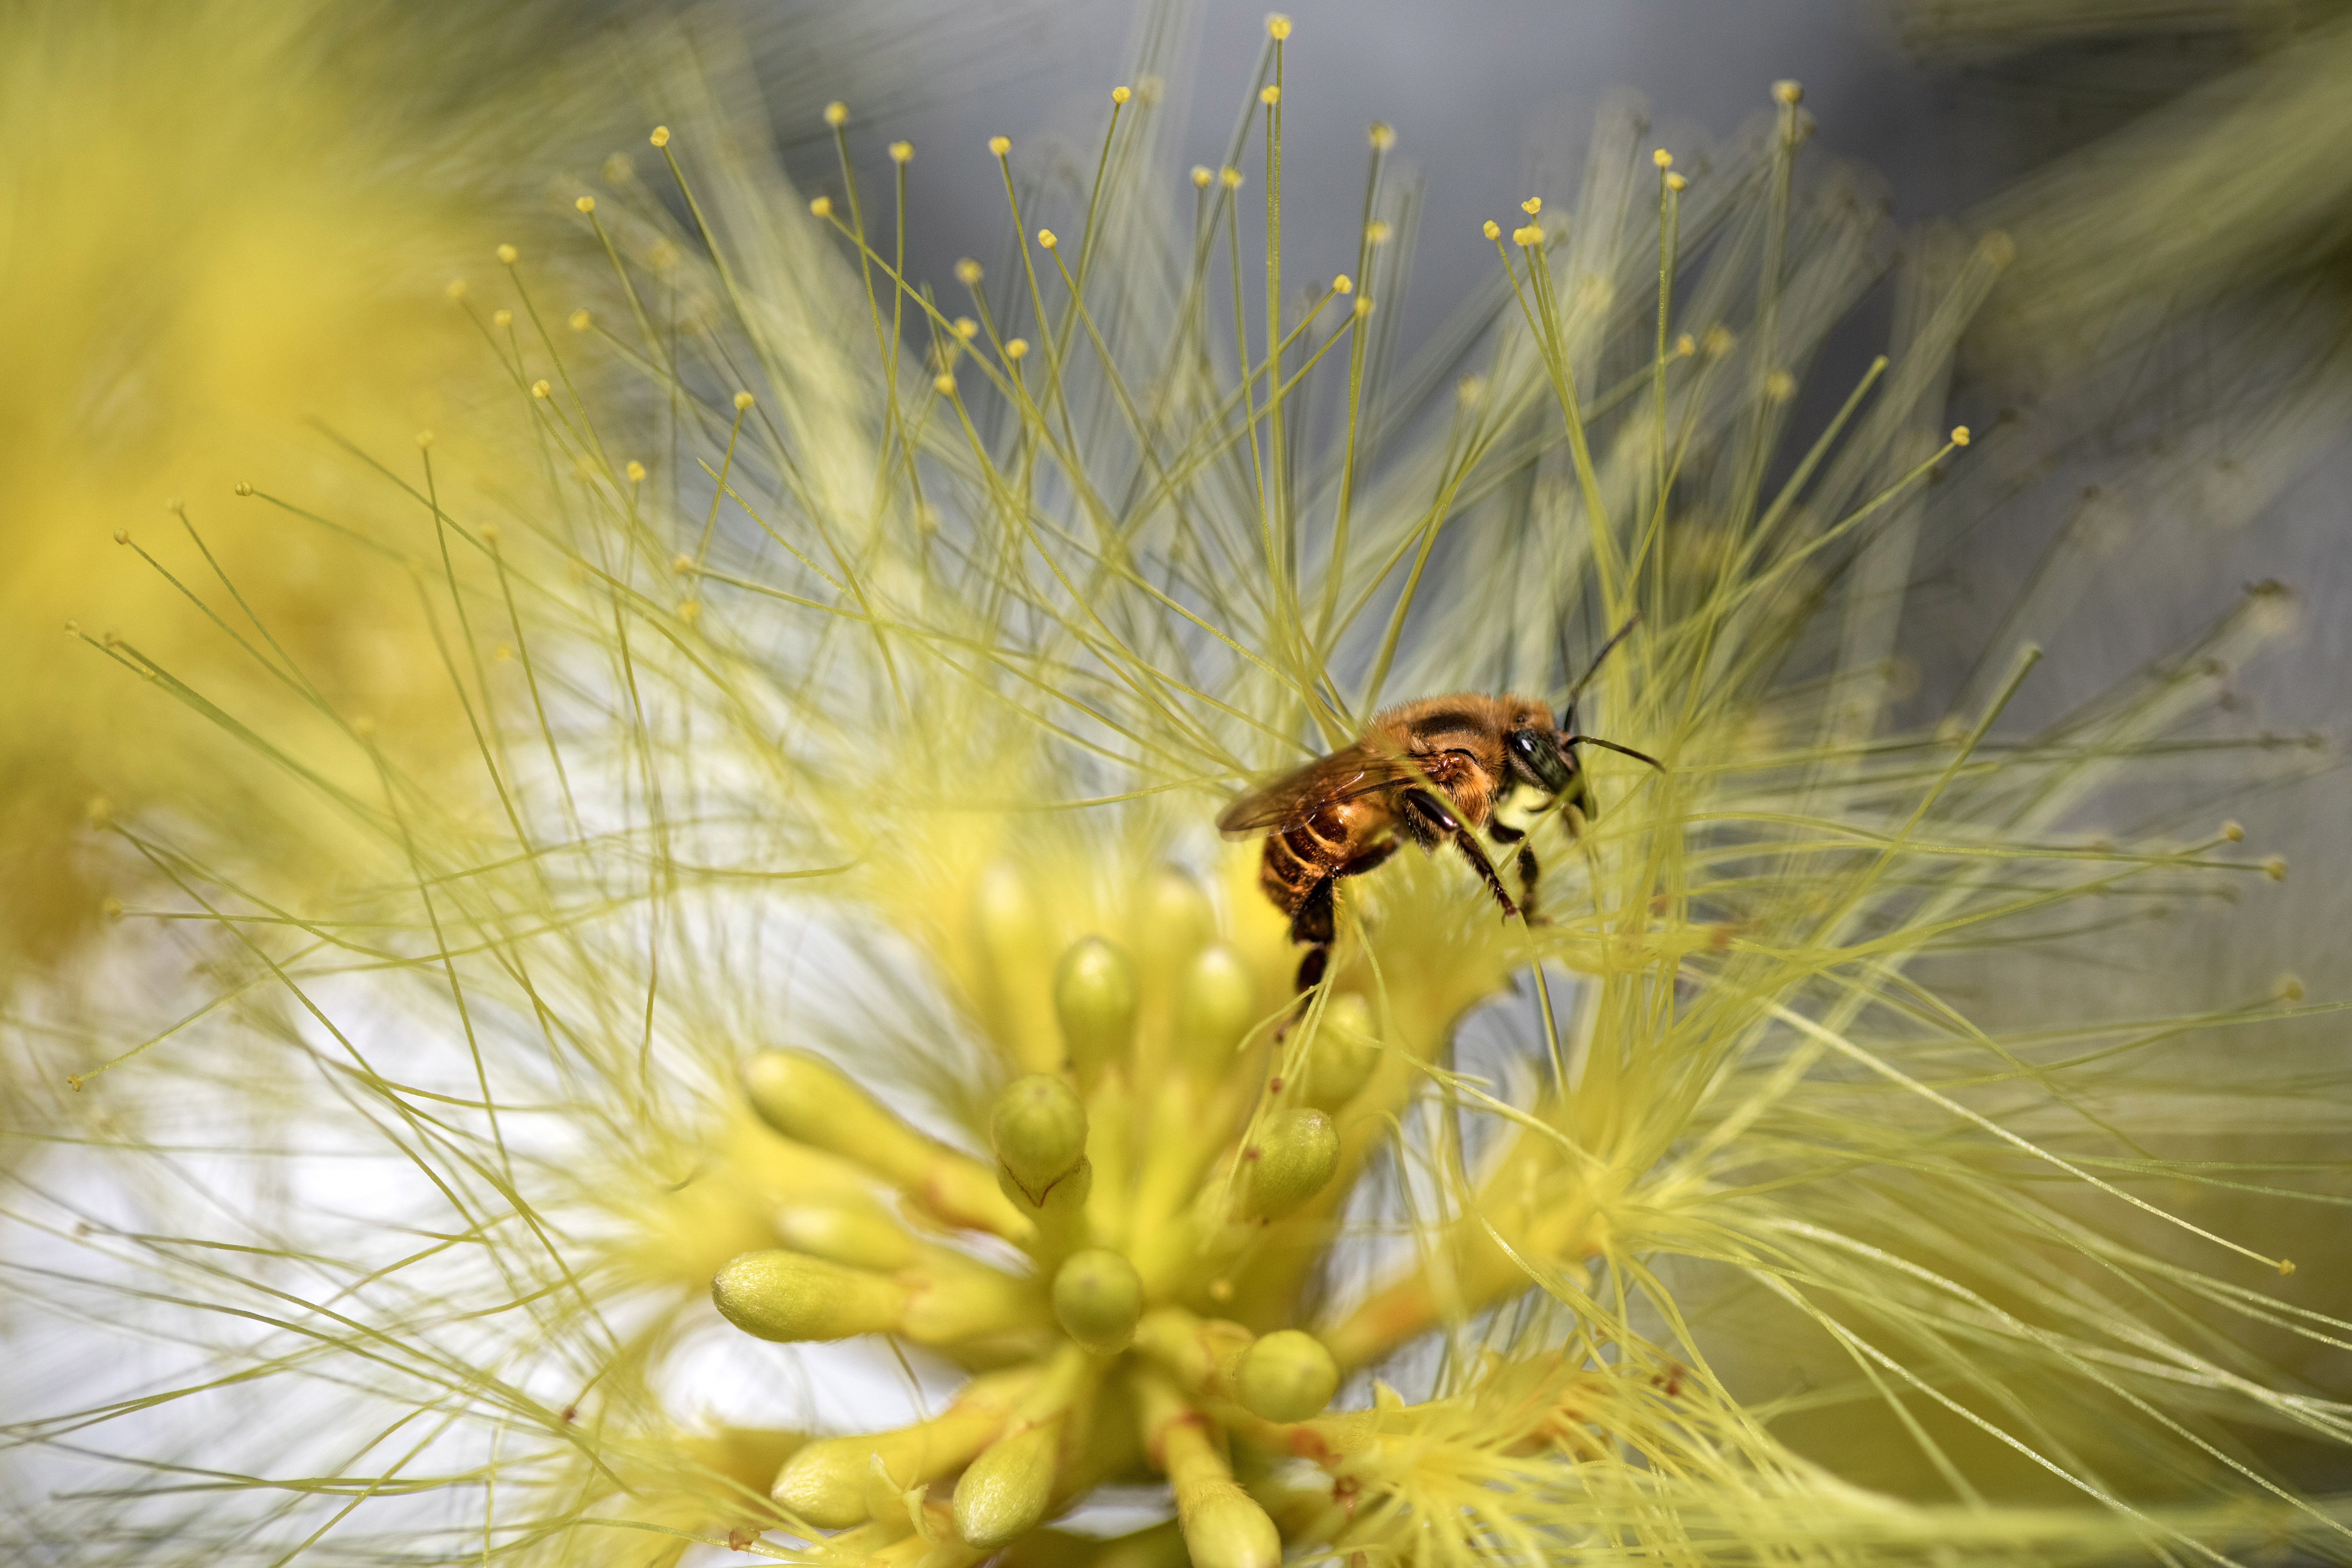 Miel de abeja: un verdadero milagro - Blog de Alimentos - ANR Blogs